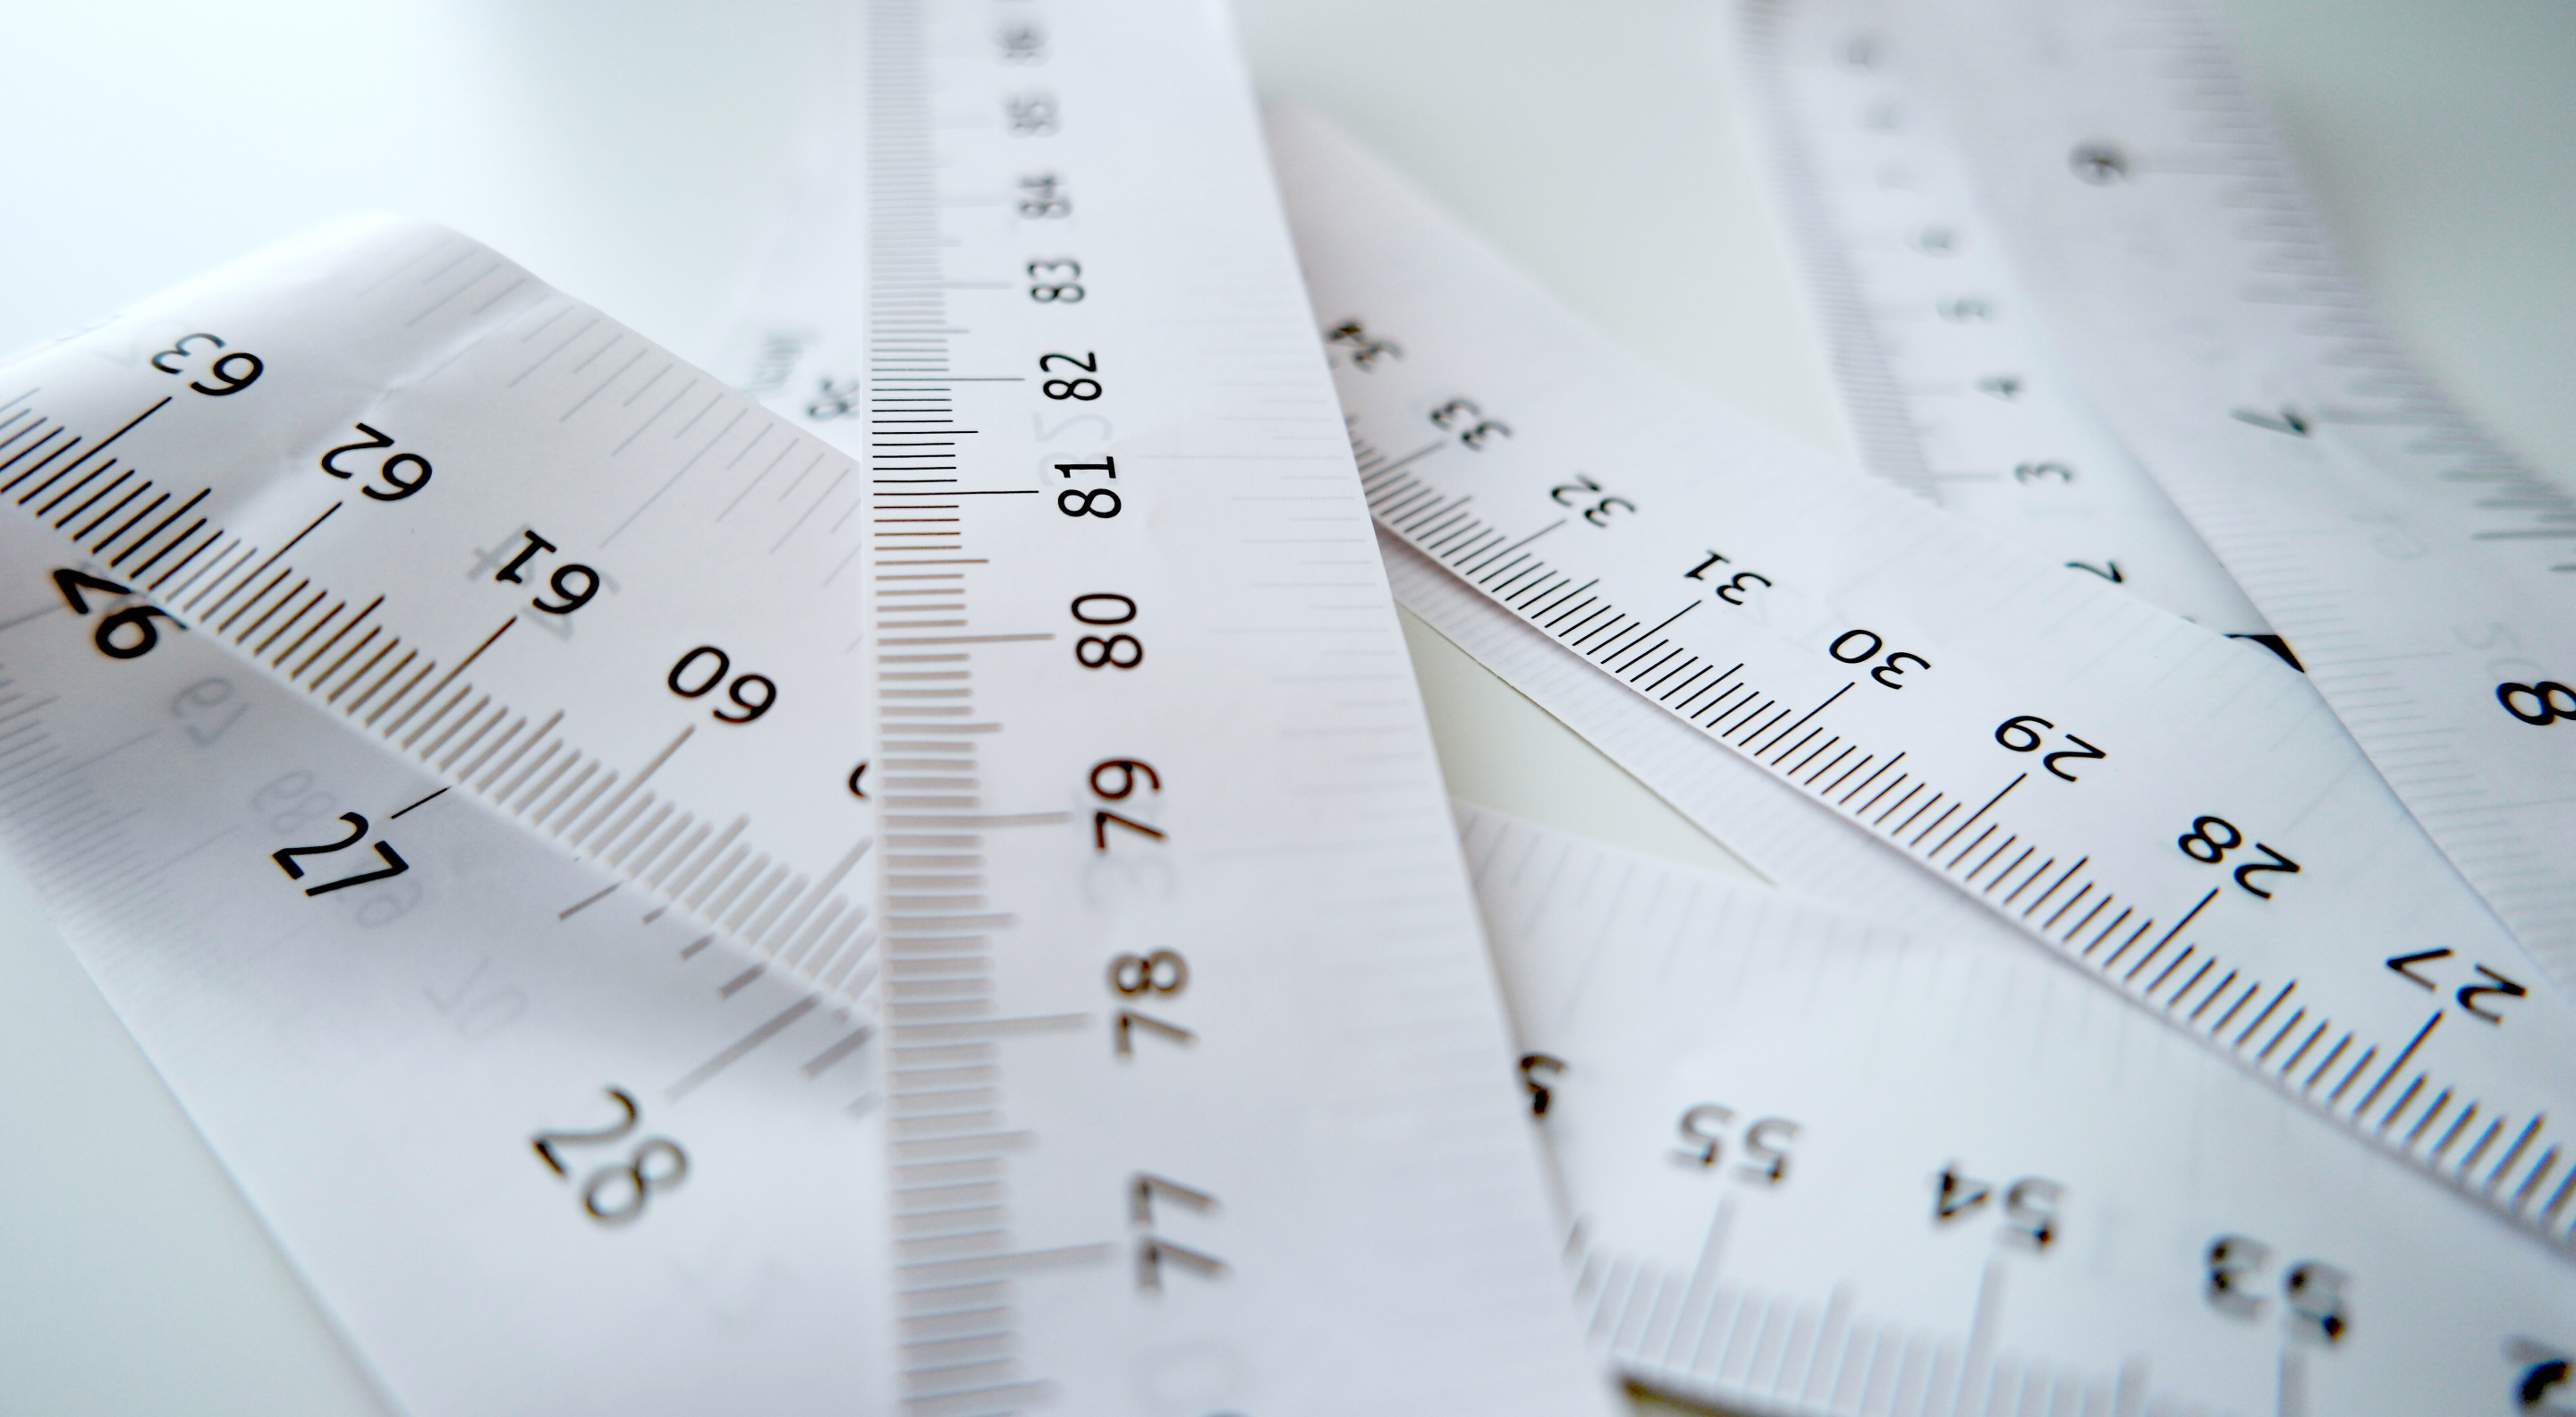 Il rapporto vita/altezza è il rapporto tra la circonferenza della vita e l'altezza del corpo. Rispetto all'indice di massa corporea (BMI), si suppone che fornisca un'indicazione migliore sulla distribuzione del grasso corporeo.